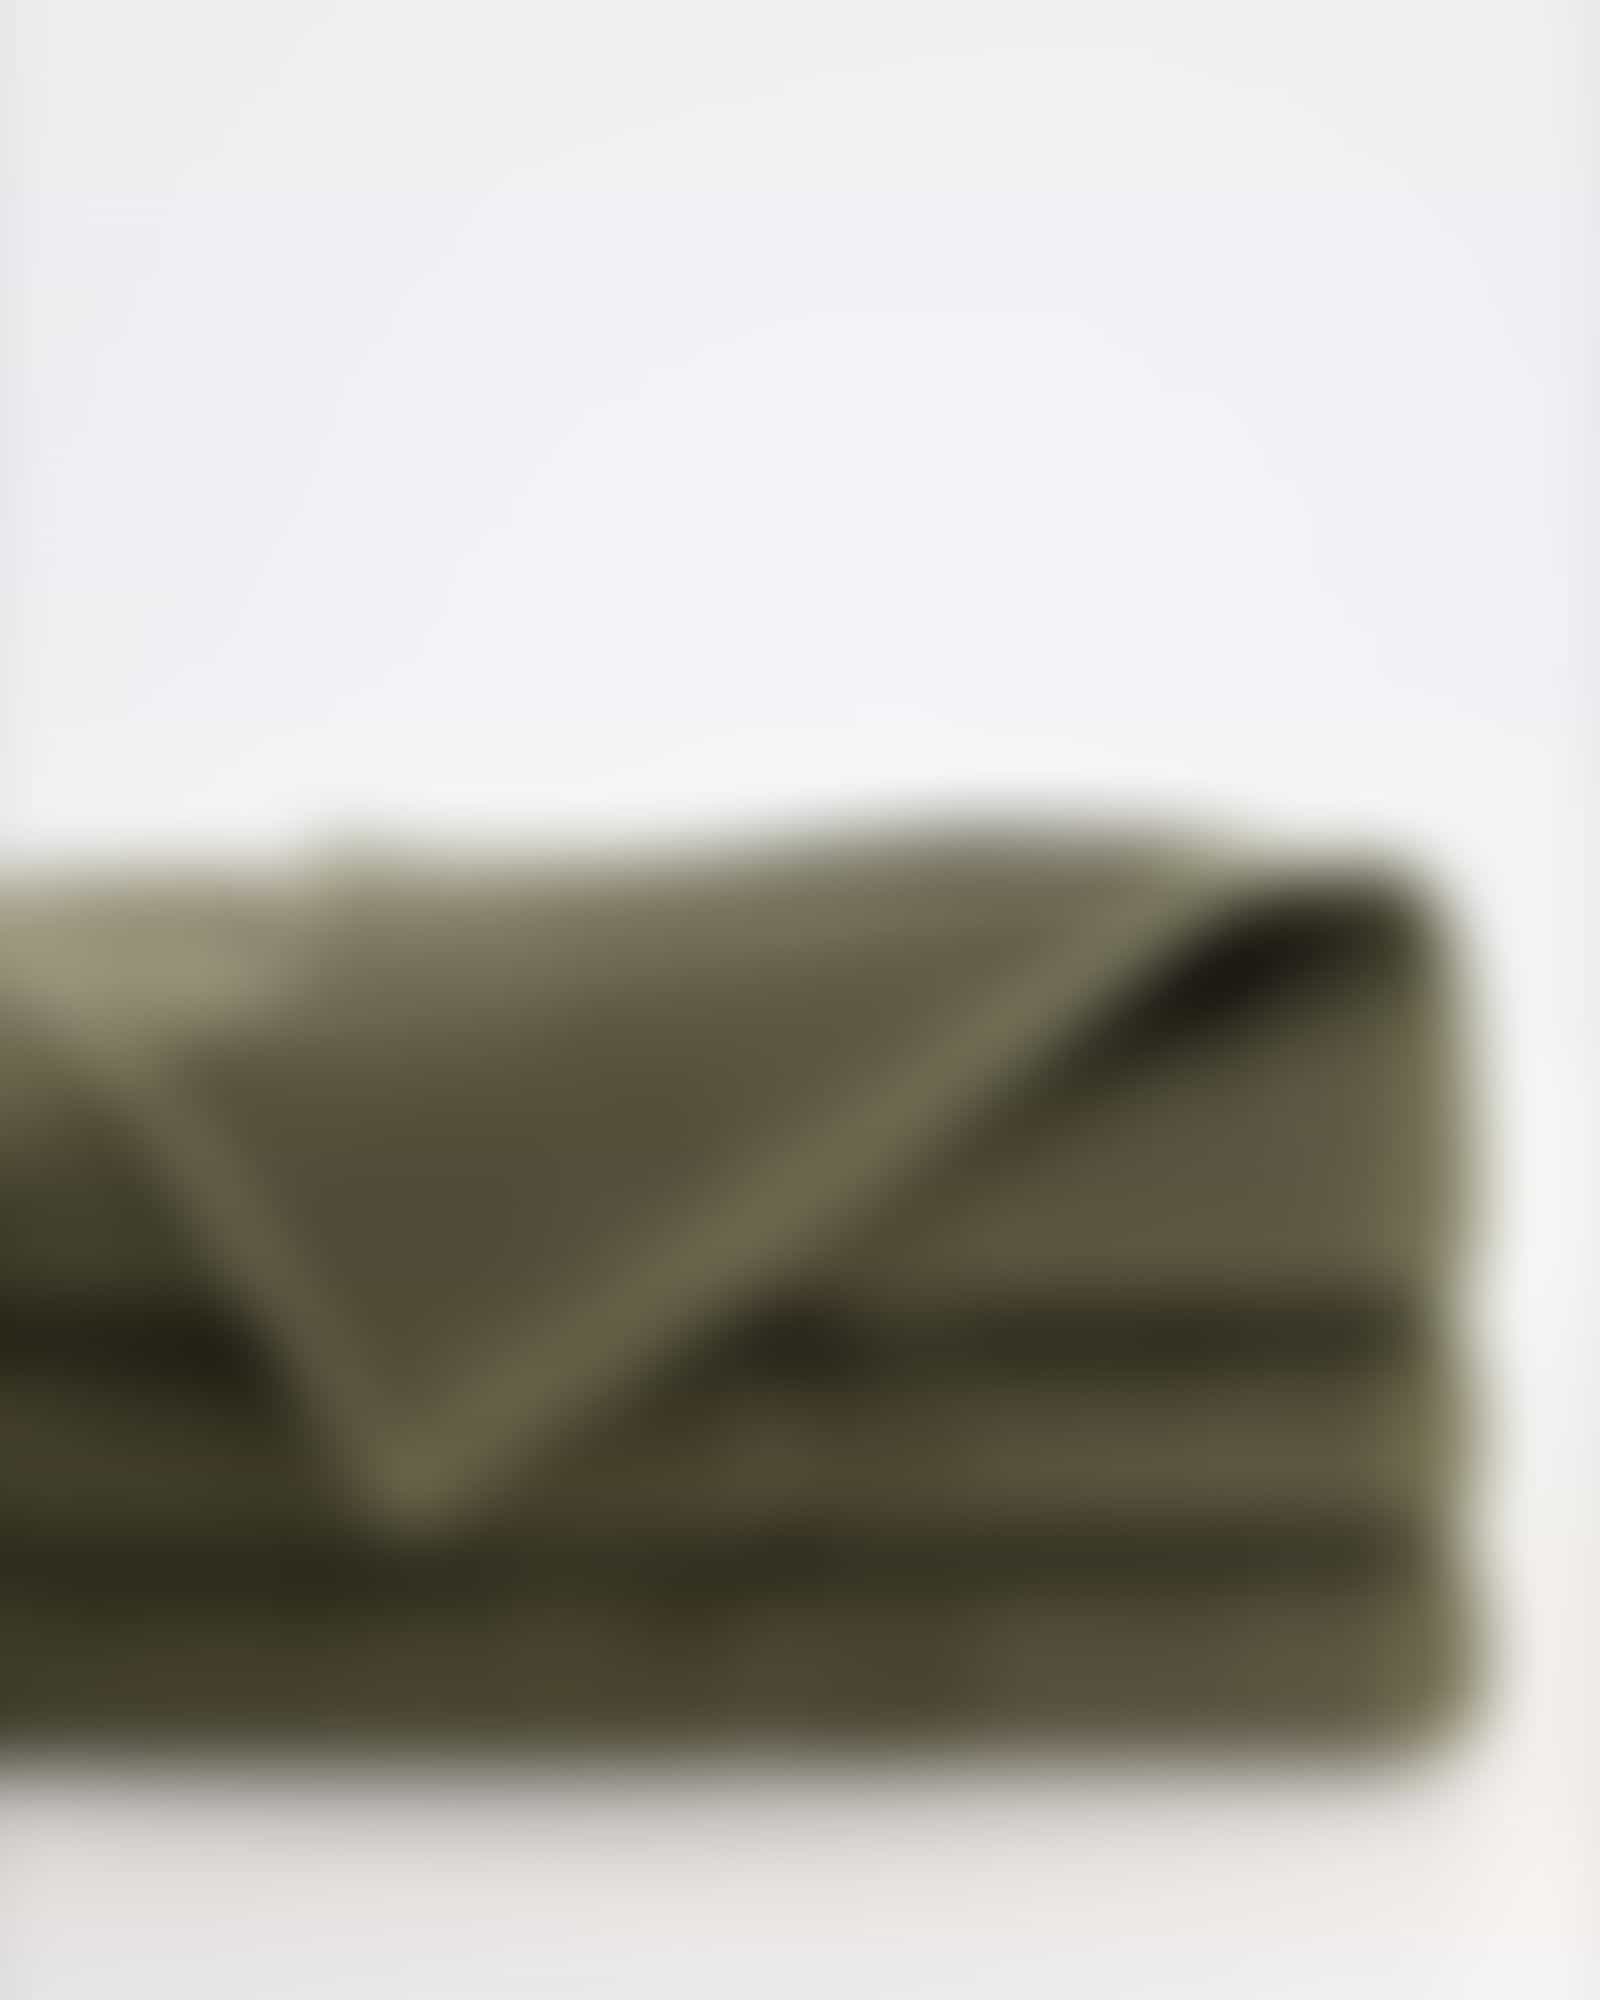 Möve Handtücher Wellbeing Perlstruktur - Farbe: sea grass - 677 - Duschtuch 67x140 cm Detailbild 2